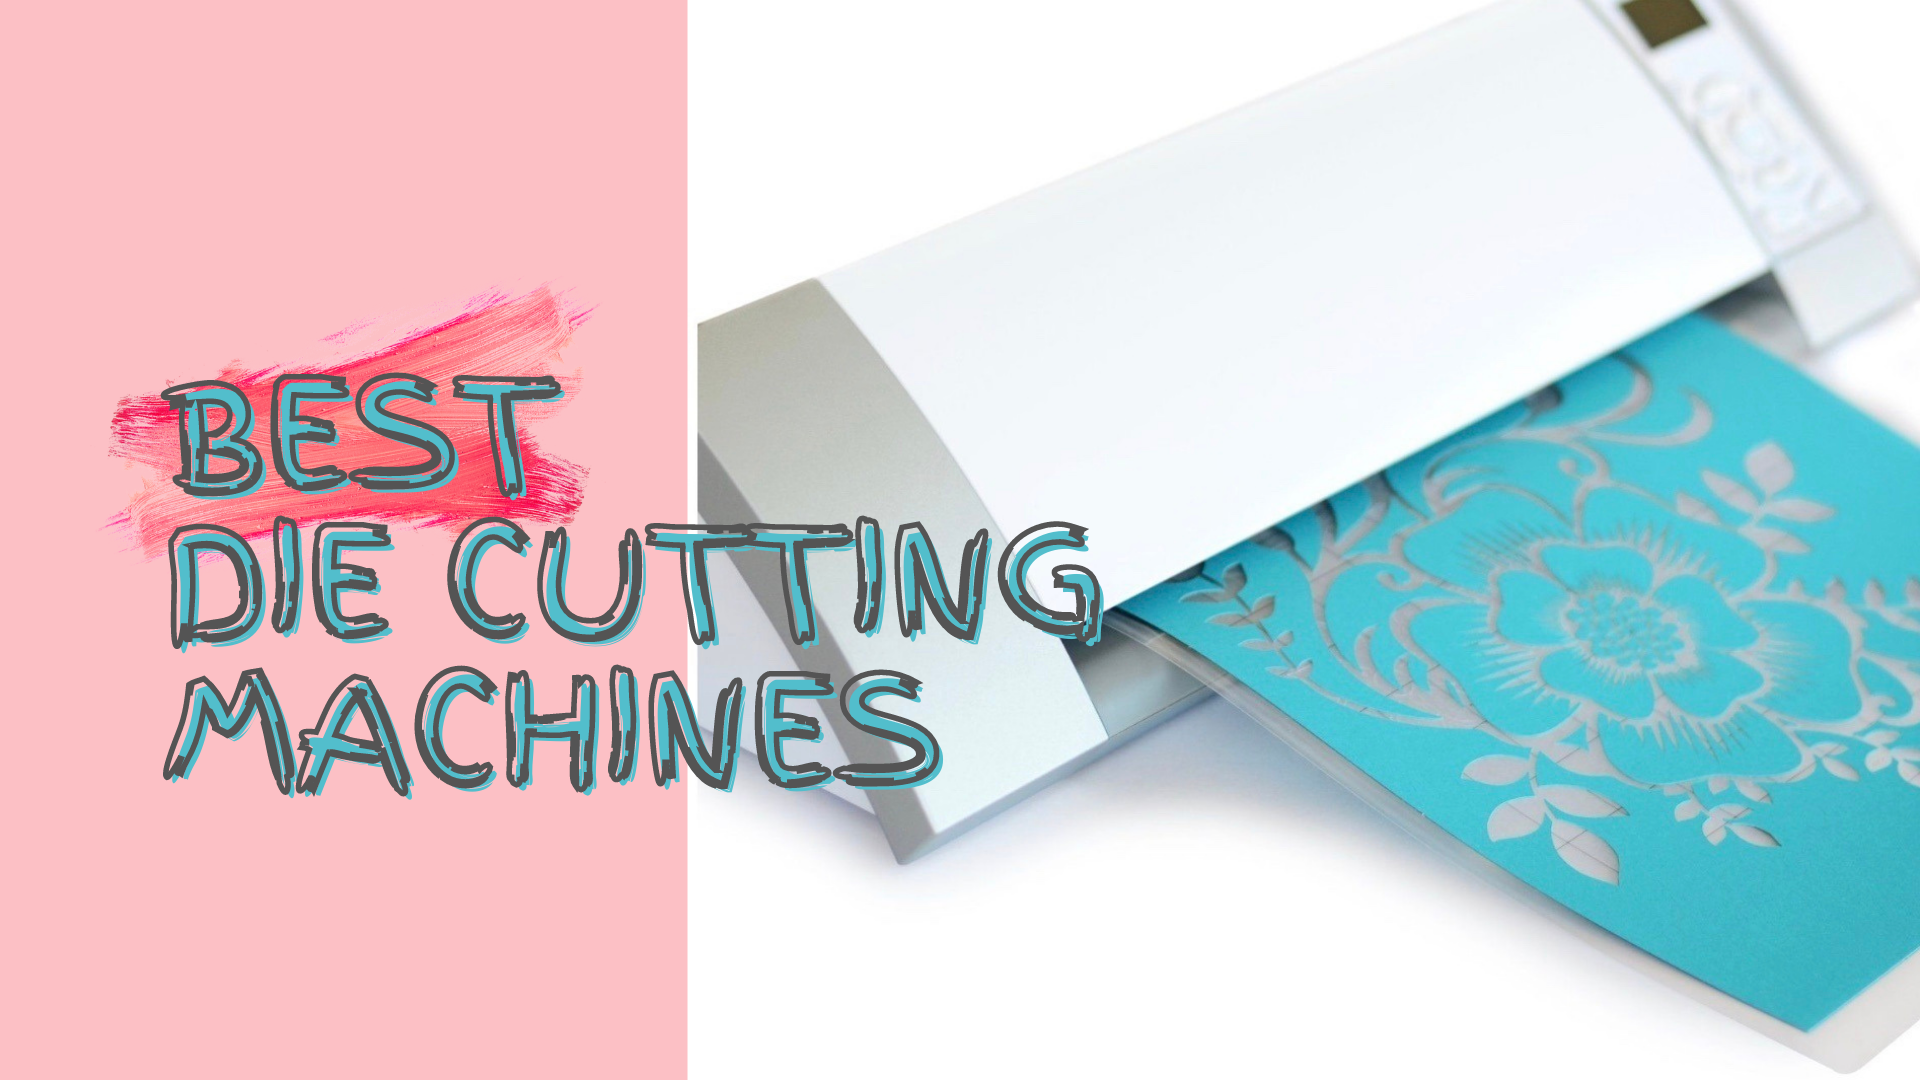 Best die cutting machines